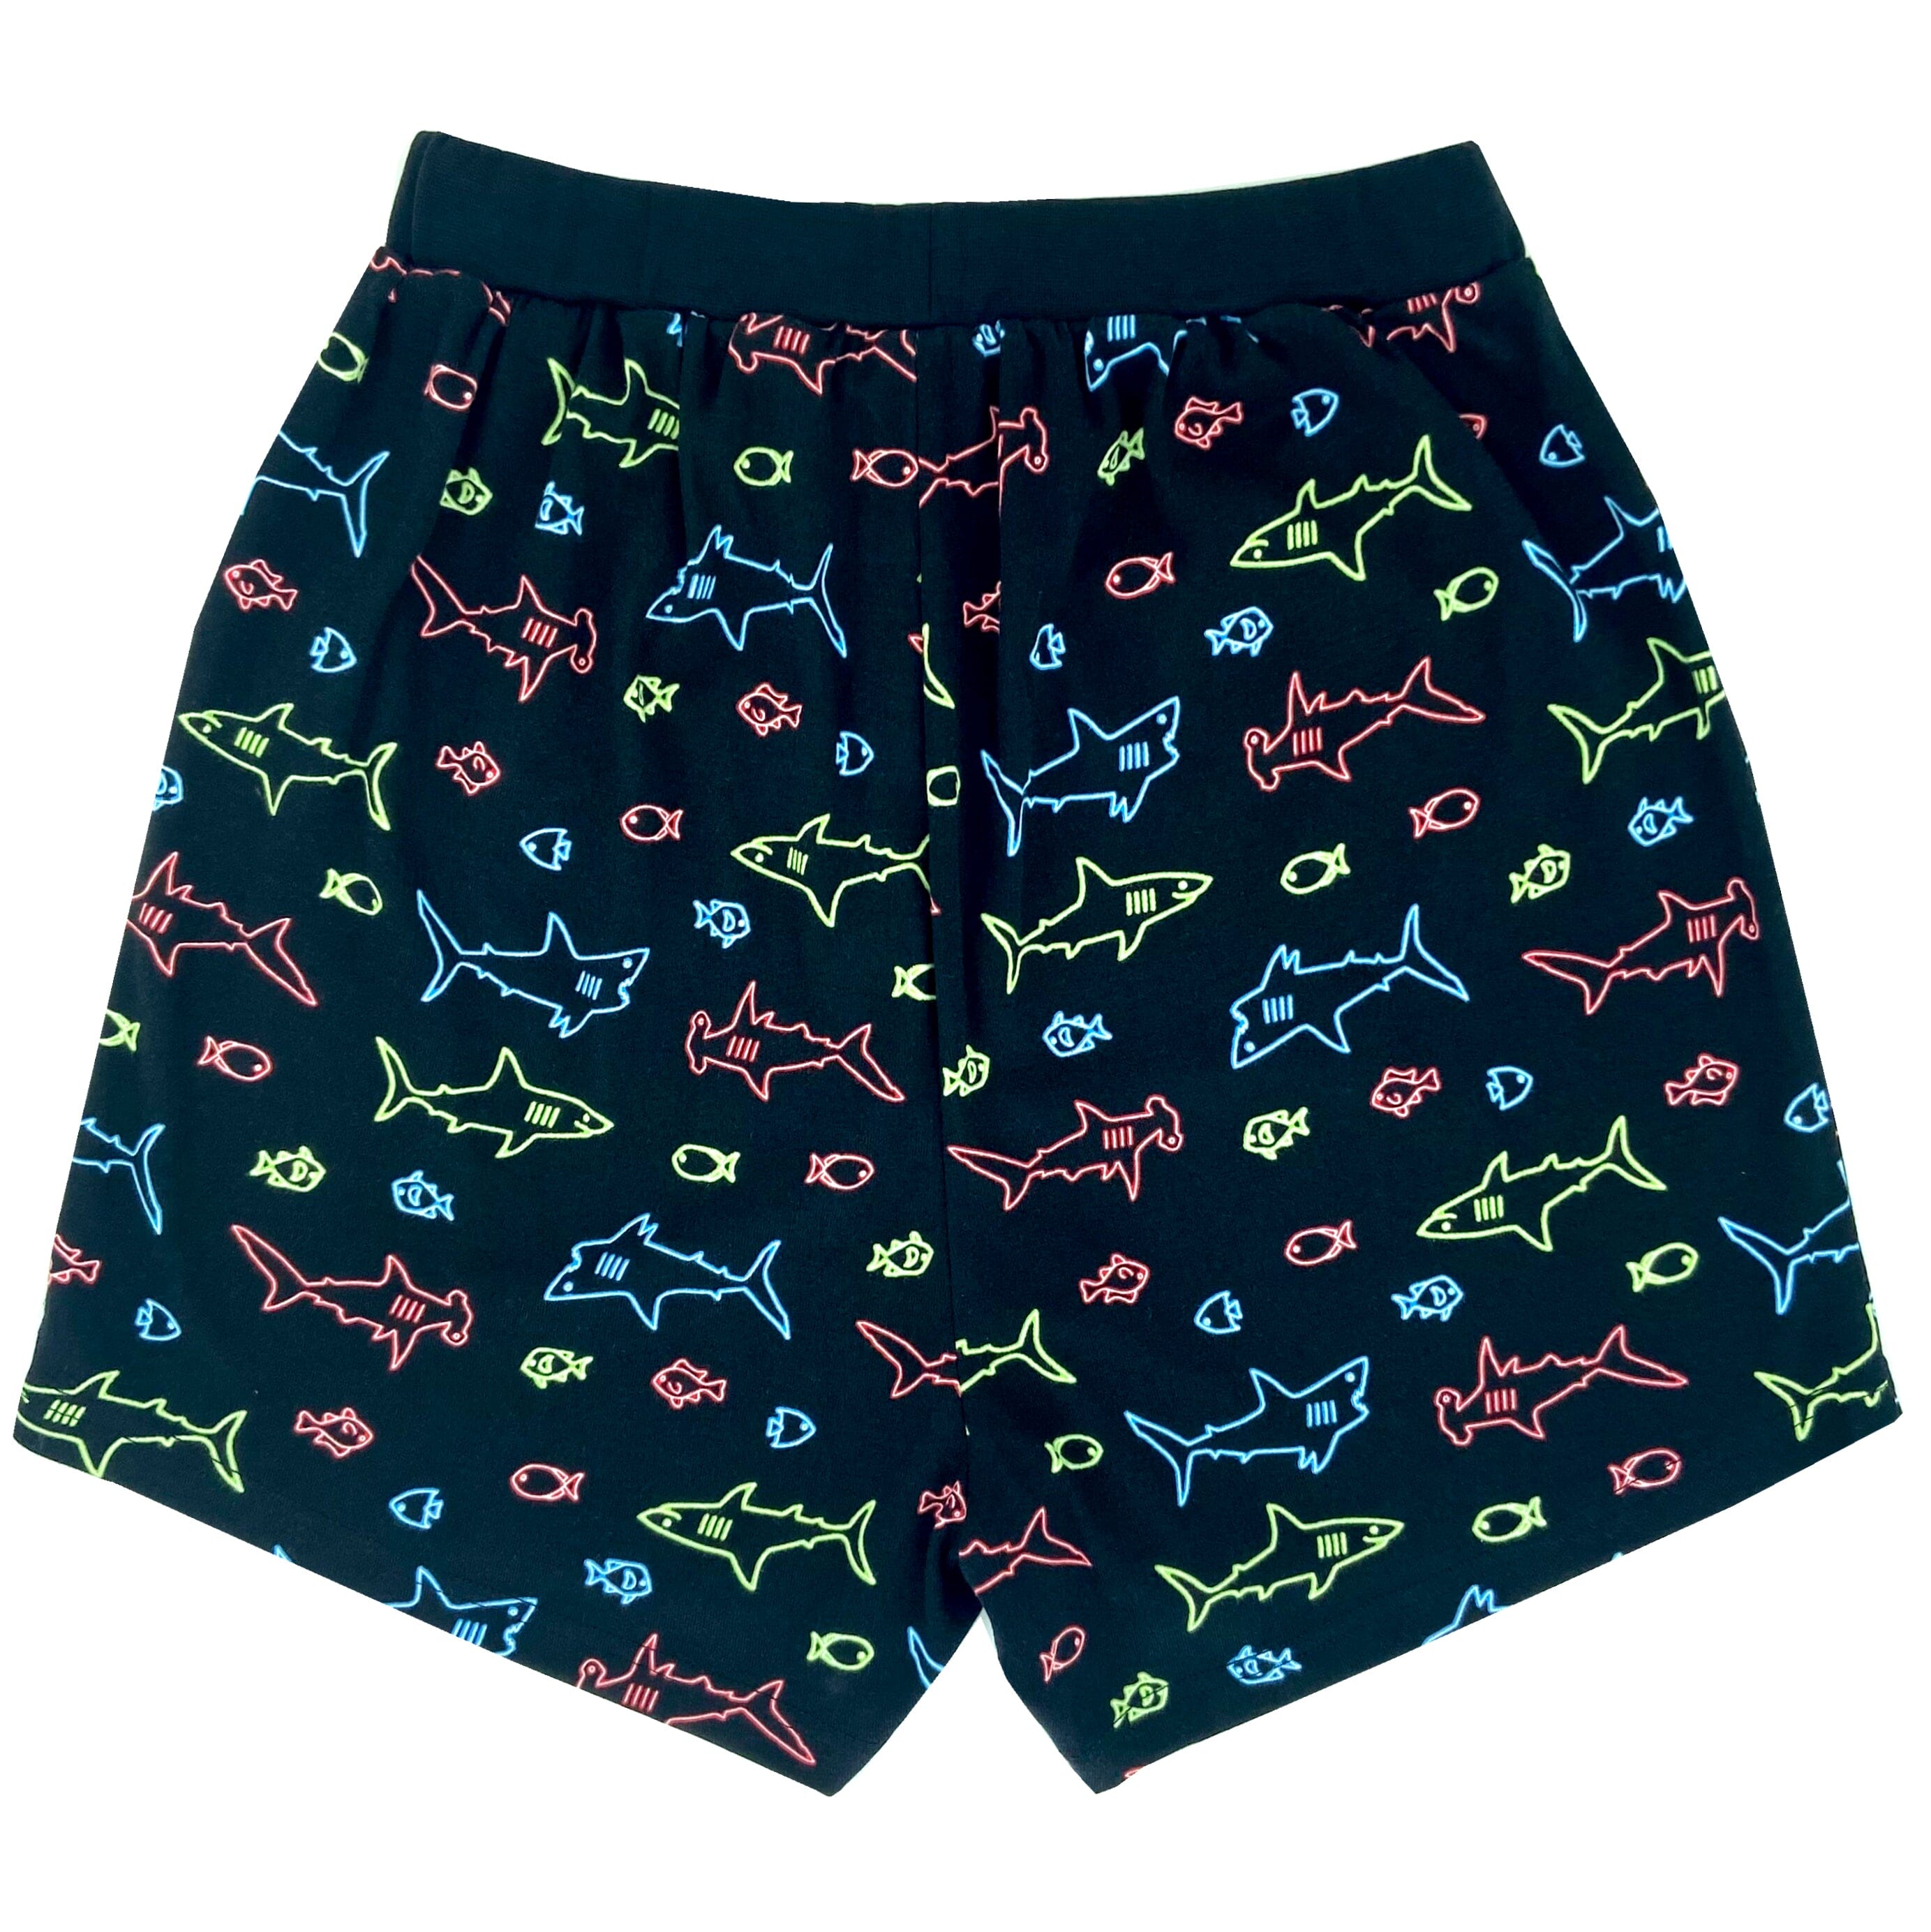 Neon Shark Boxers For Men. Buy Men's Shark Boxer Shorts Here